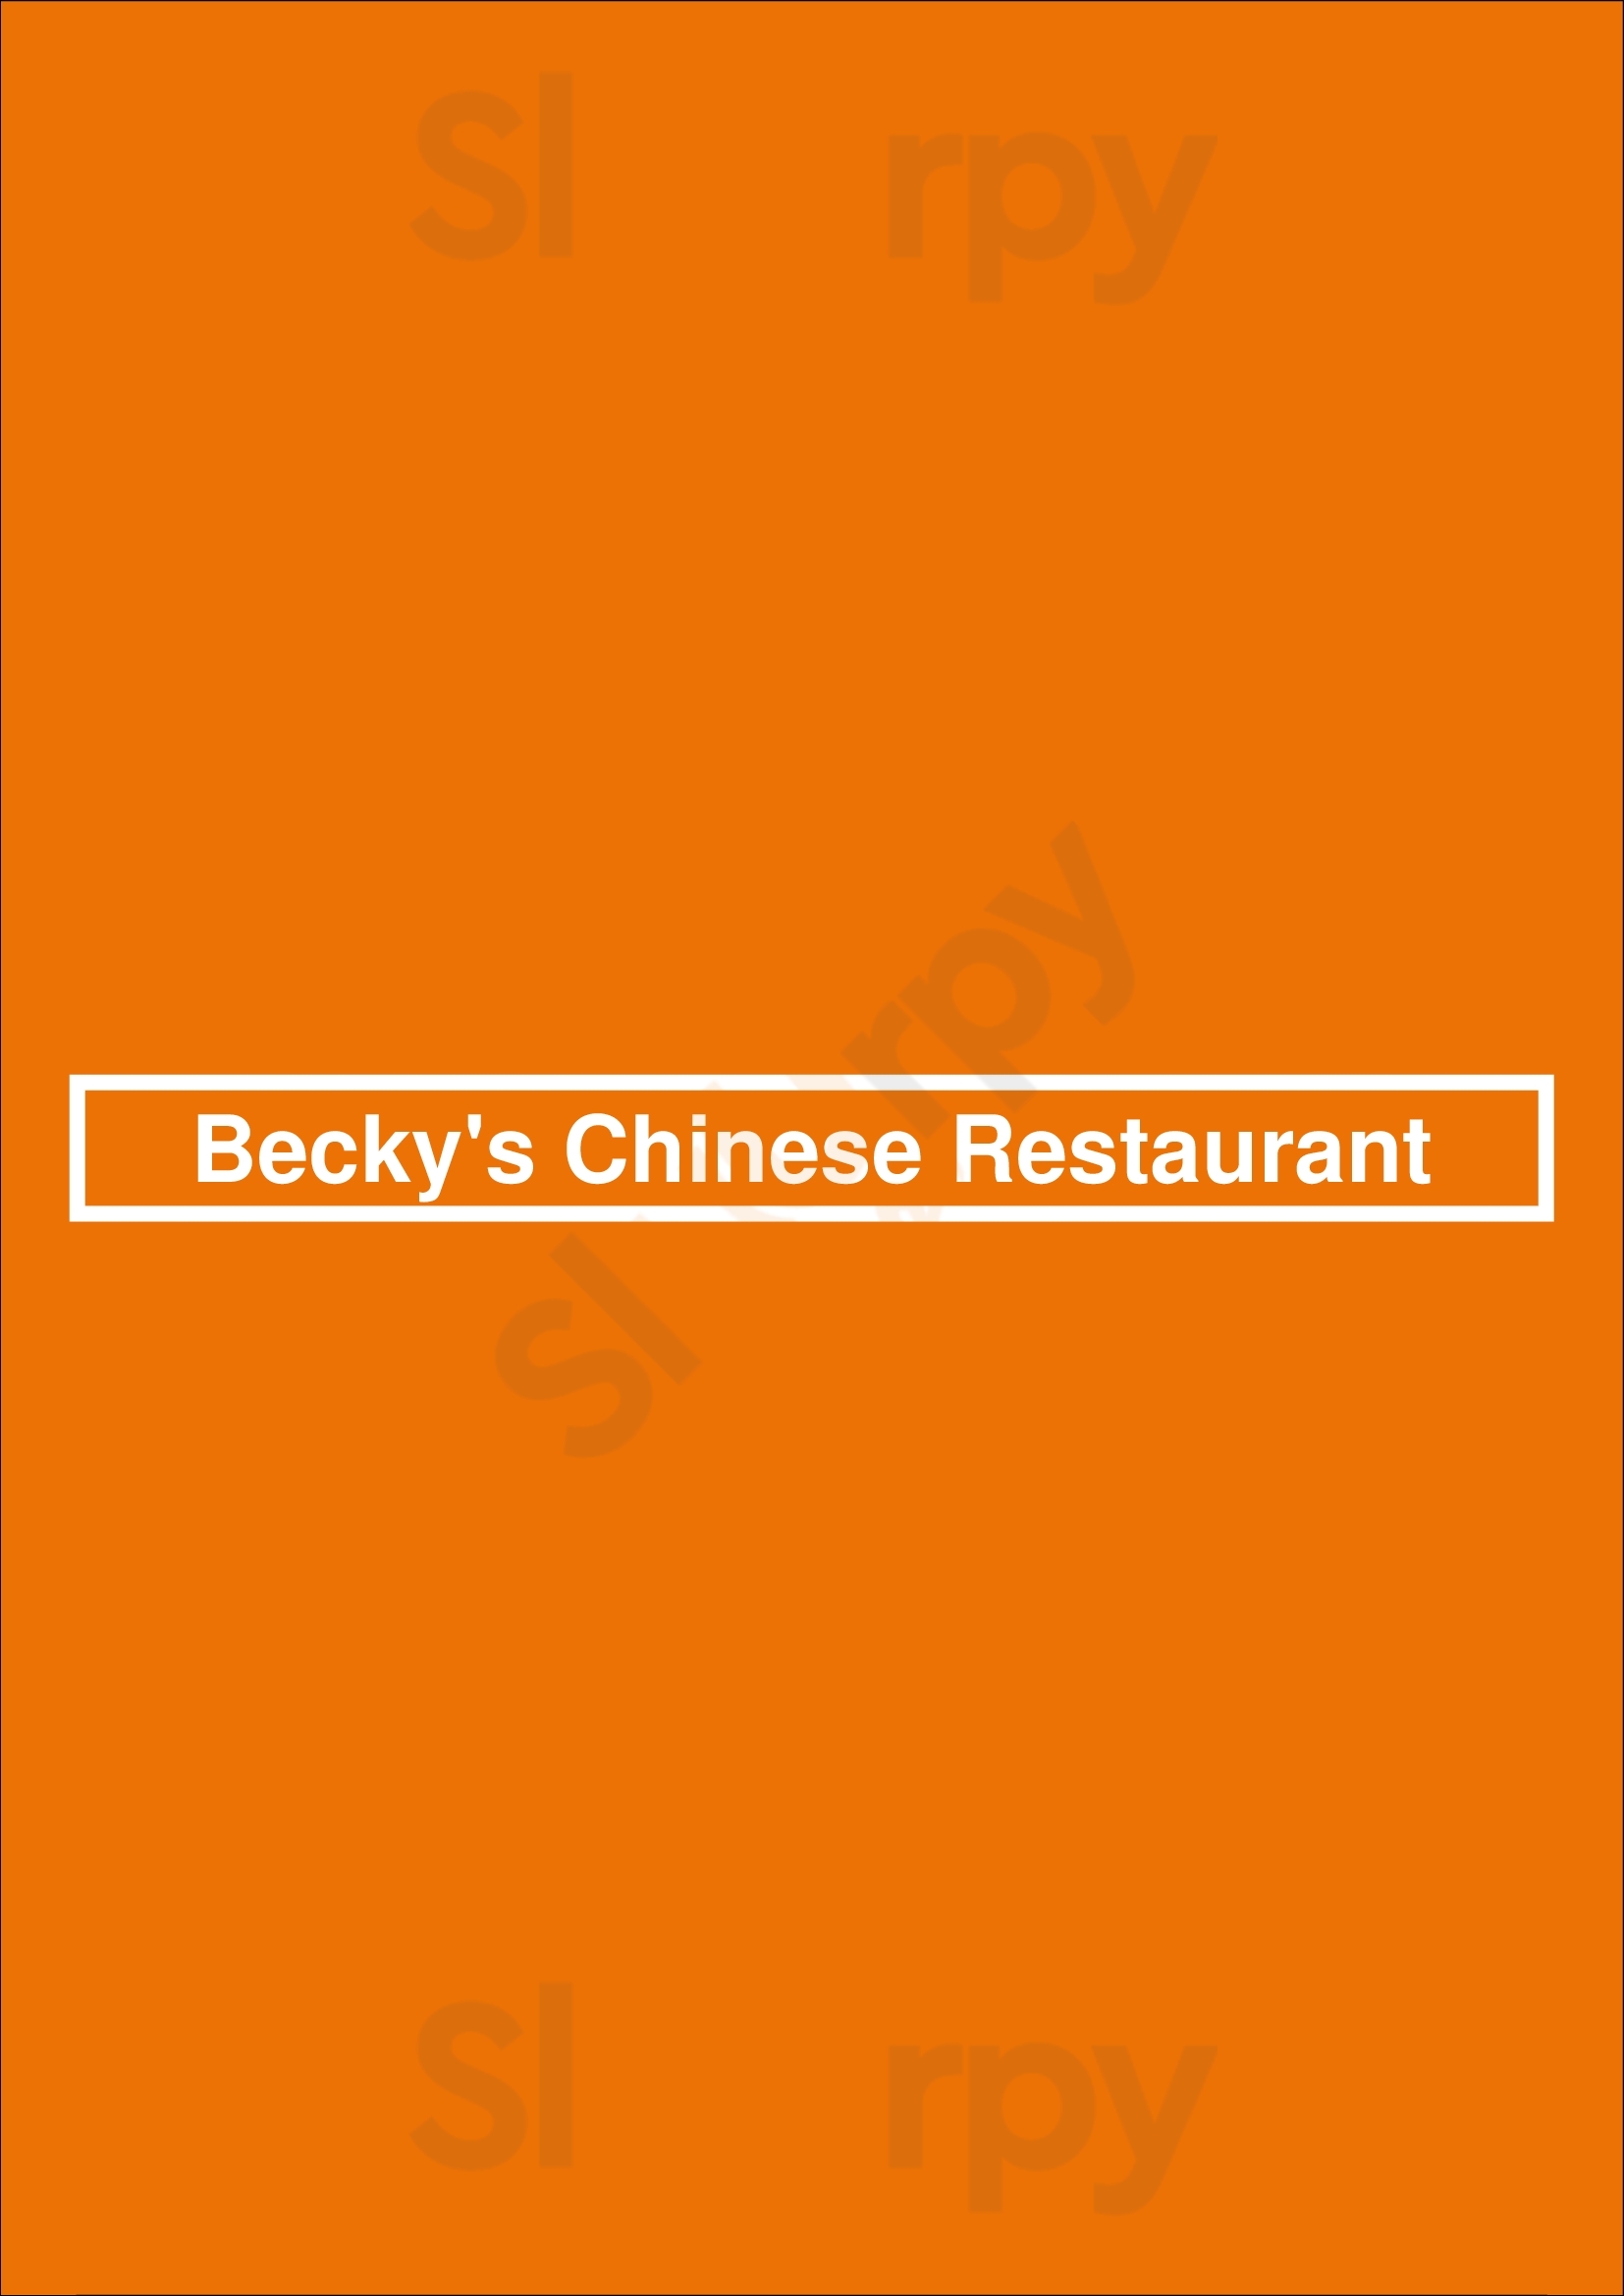 Becky's Chinese Restaurant Oakland Menu - 1